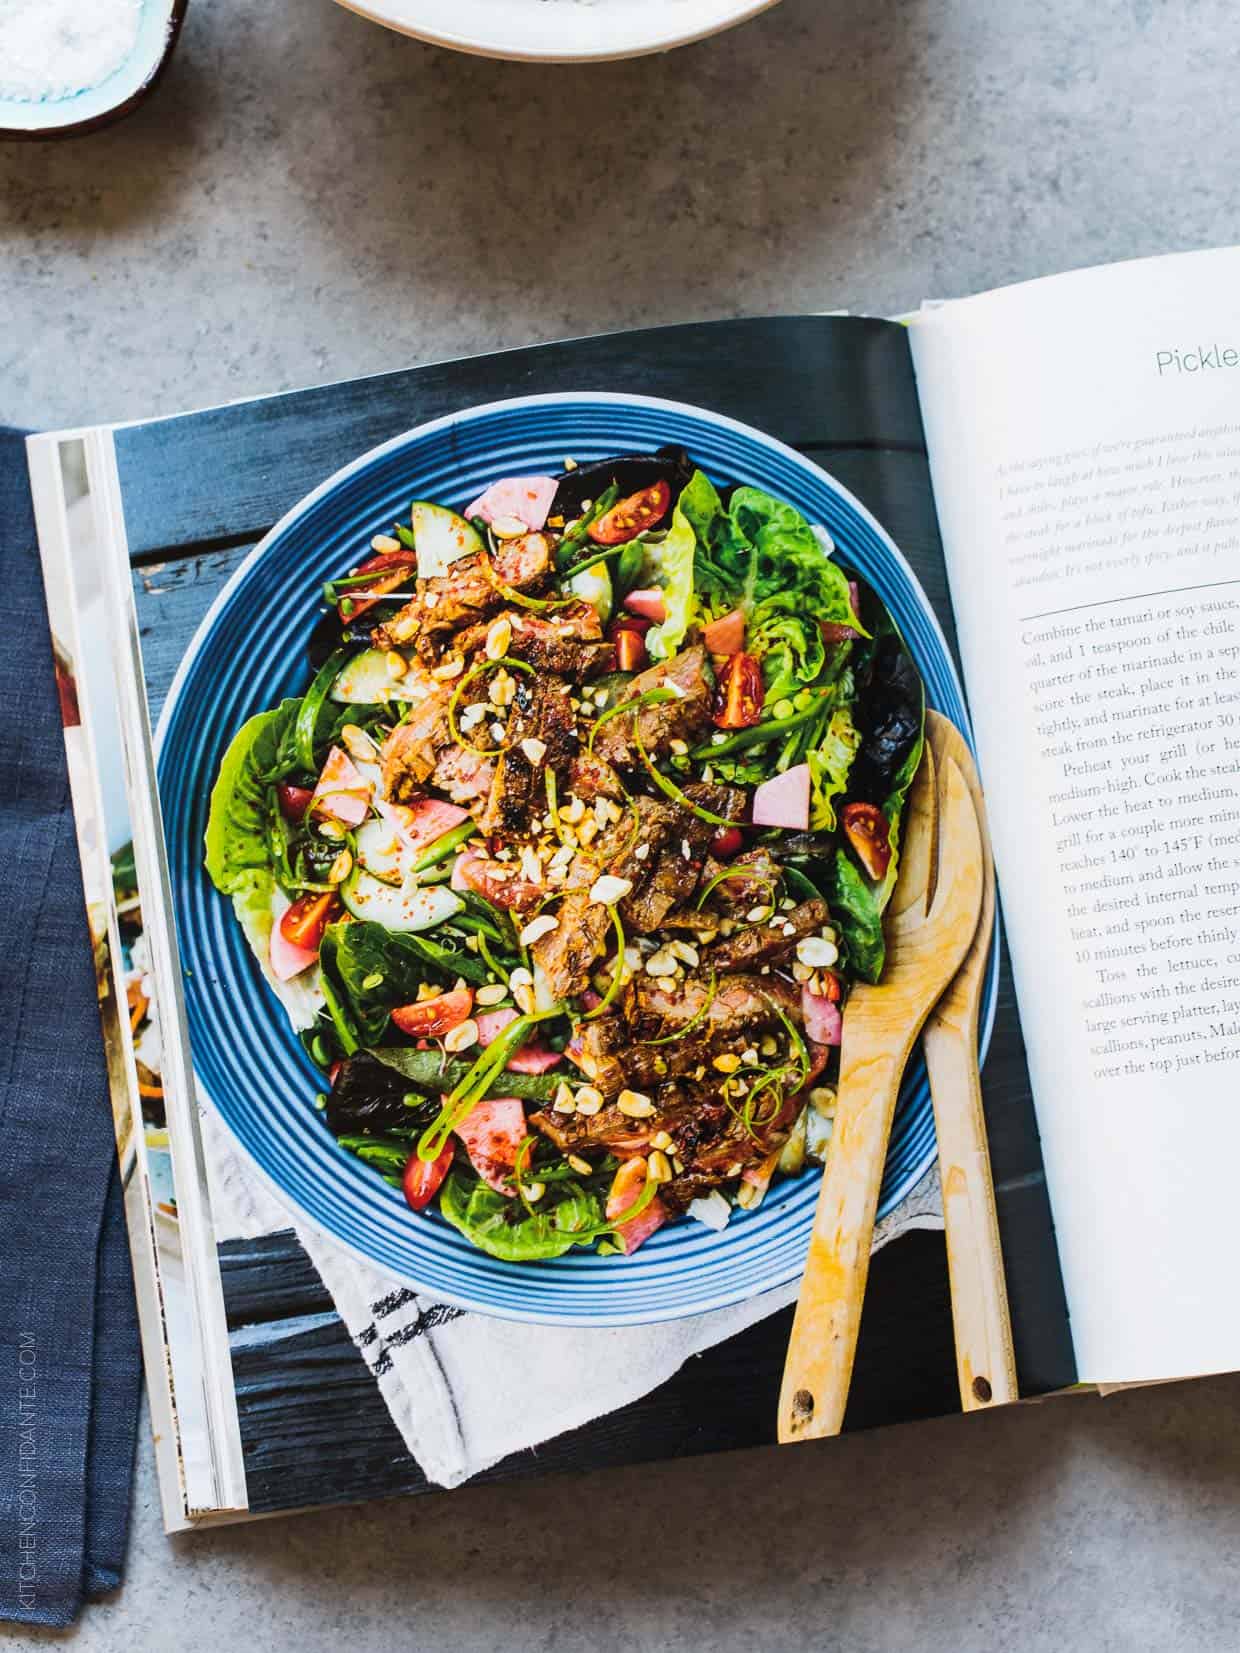 The Modern Salad cookbook by Elizabeth Howes.